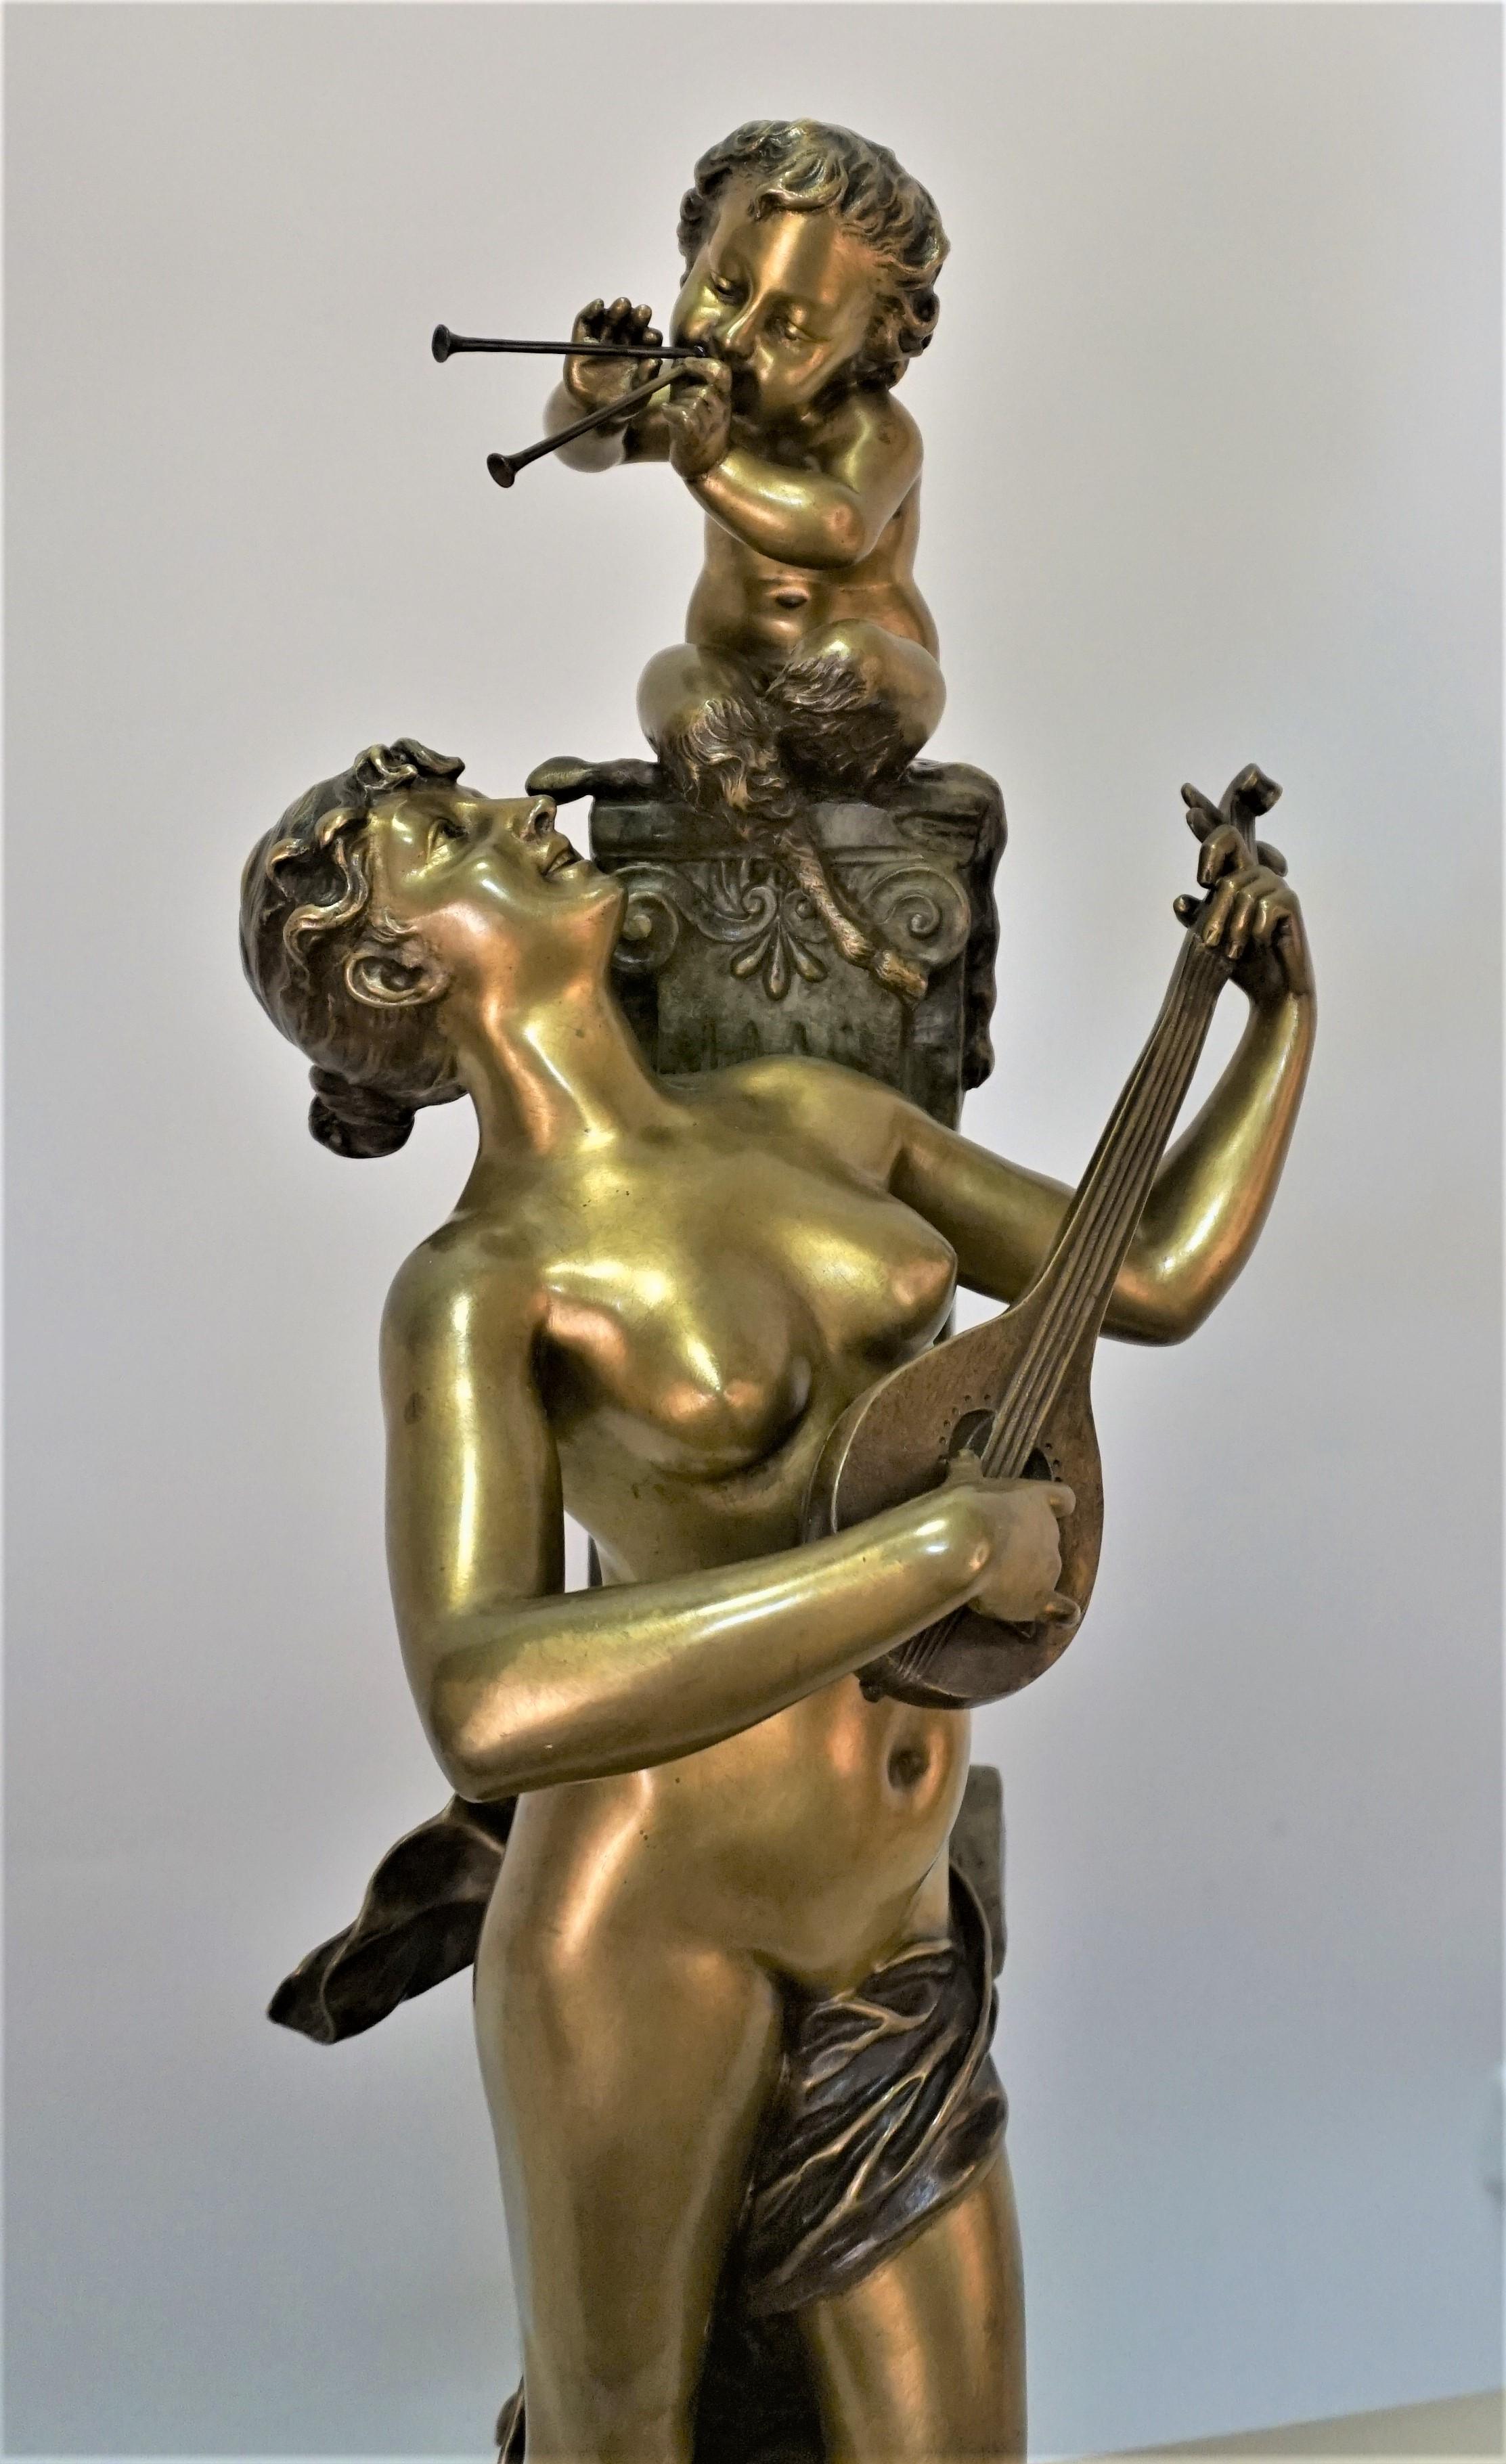 Magnifique bronze patiné à deux tons représentant une jeune femme jouant de la musique avec un jeune satyre par l'artiste italien Aristide De Ranieri vivant en France.